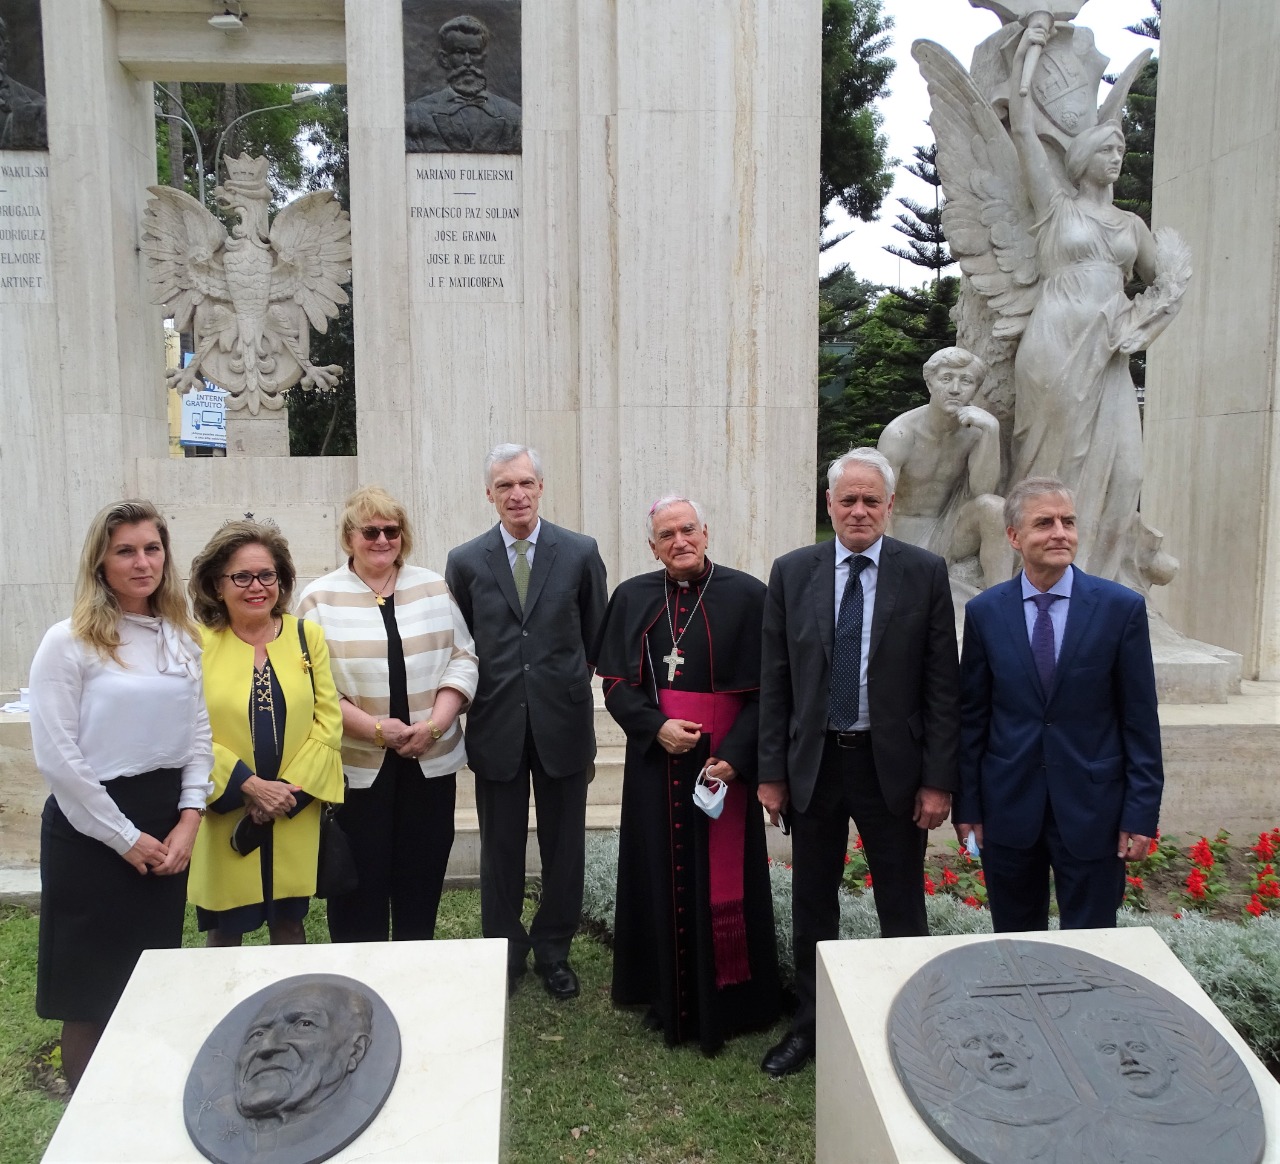 Embajada de Polonia develó monumento al sacerdote investigador Edmund Szeliga